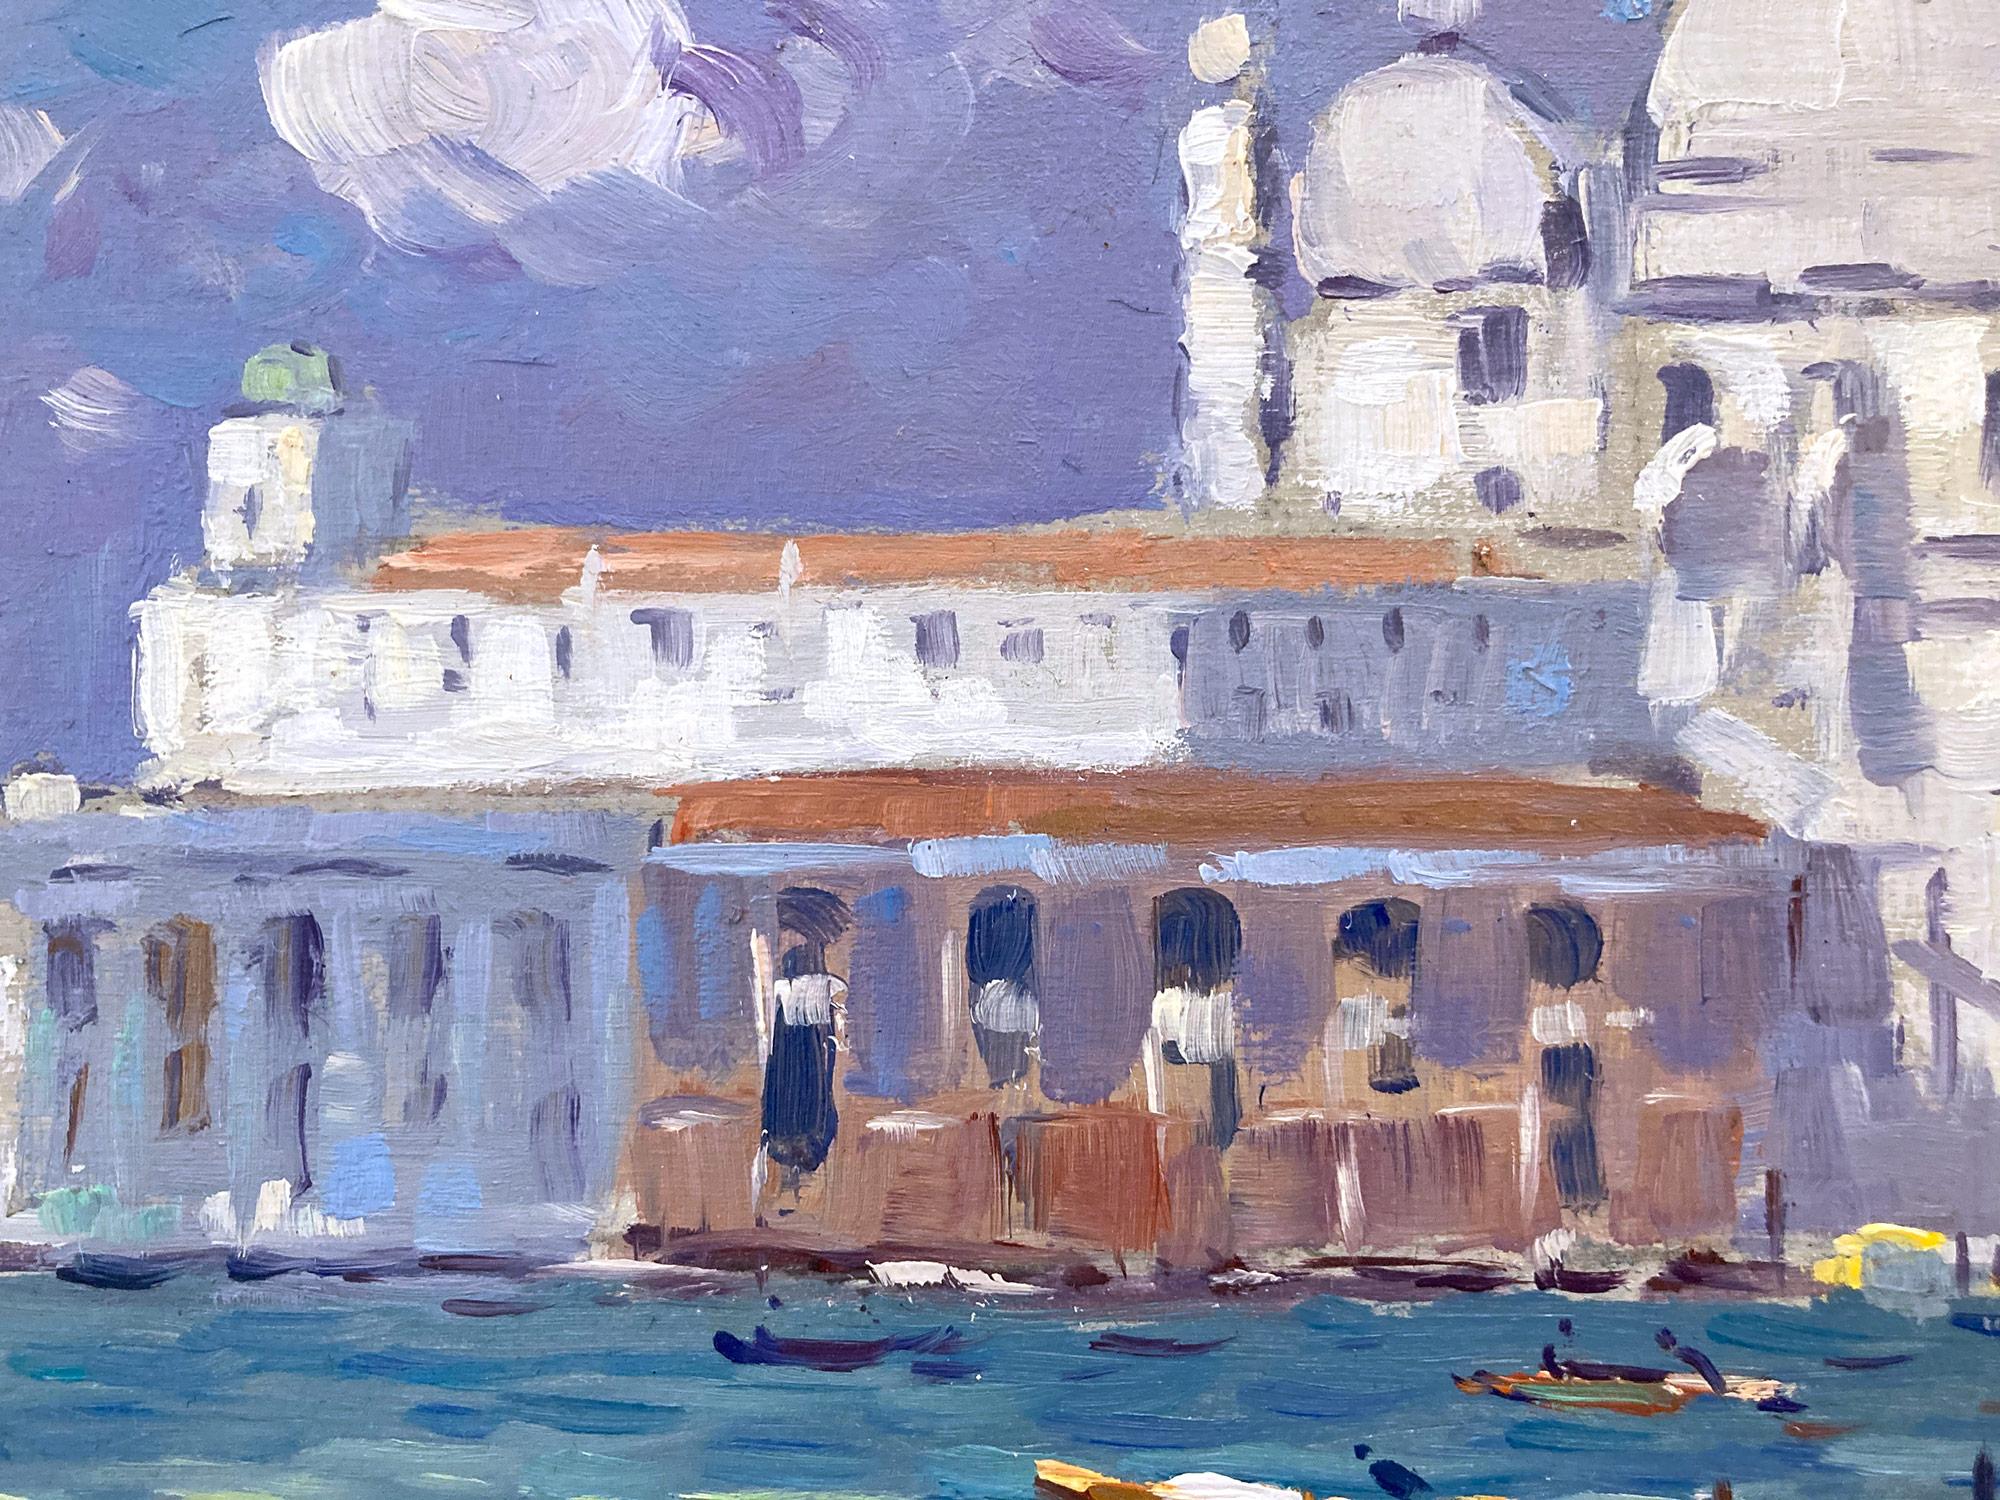 Cette captivante scène de Venise, datant du XXe siècle, illustre à merveille la véritable passion de Van der Plas pour les peintures de genre en plein air. Les couleurs vives et les coups de pinceau impressionnistes sont réalisés avec autant de